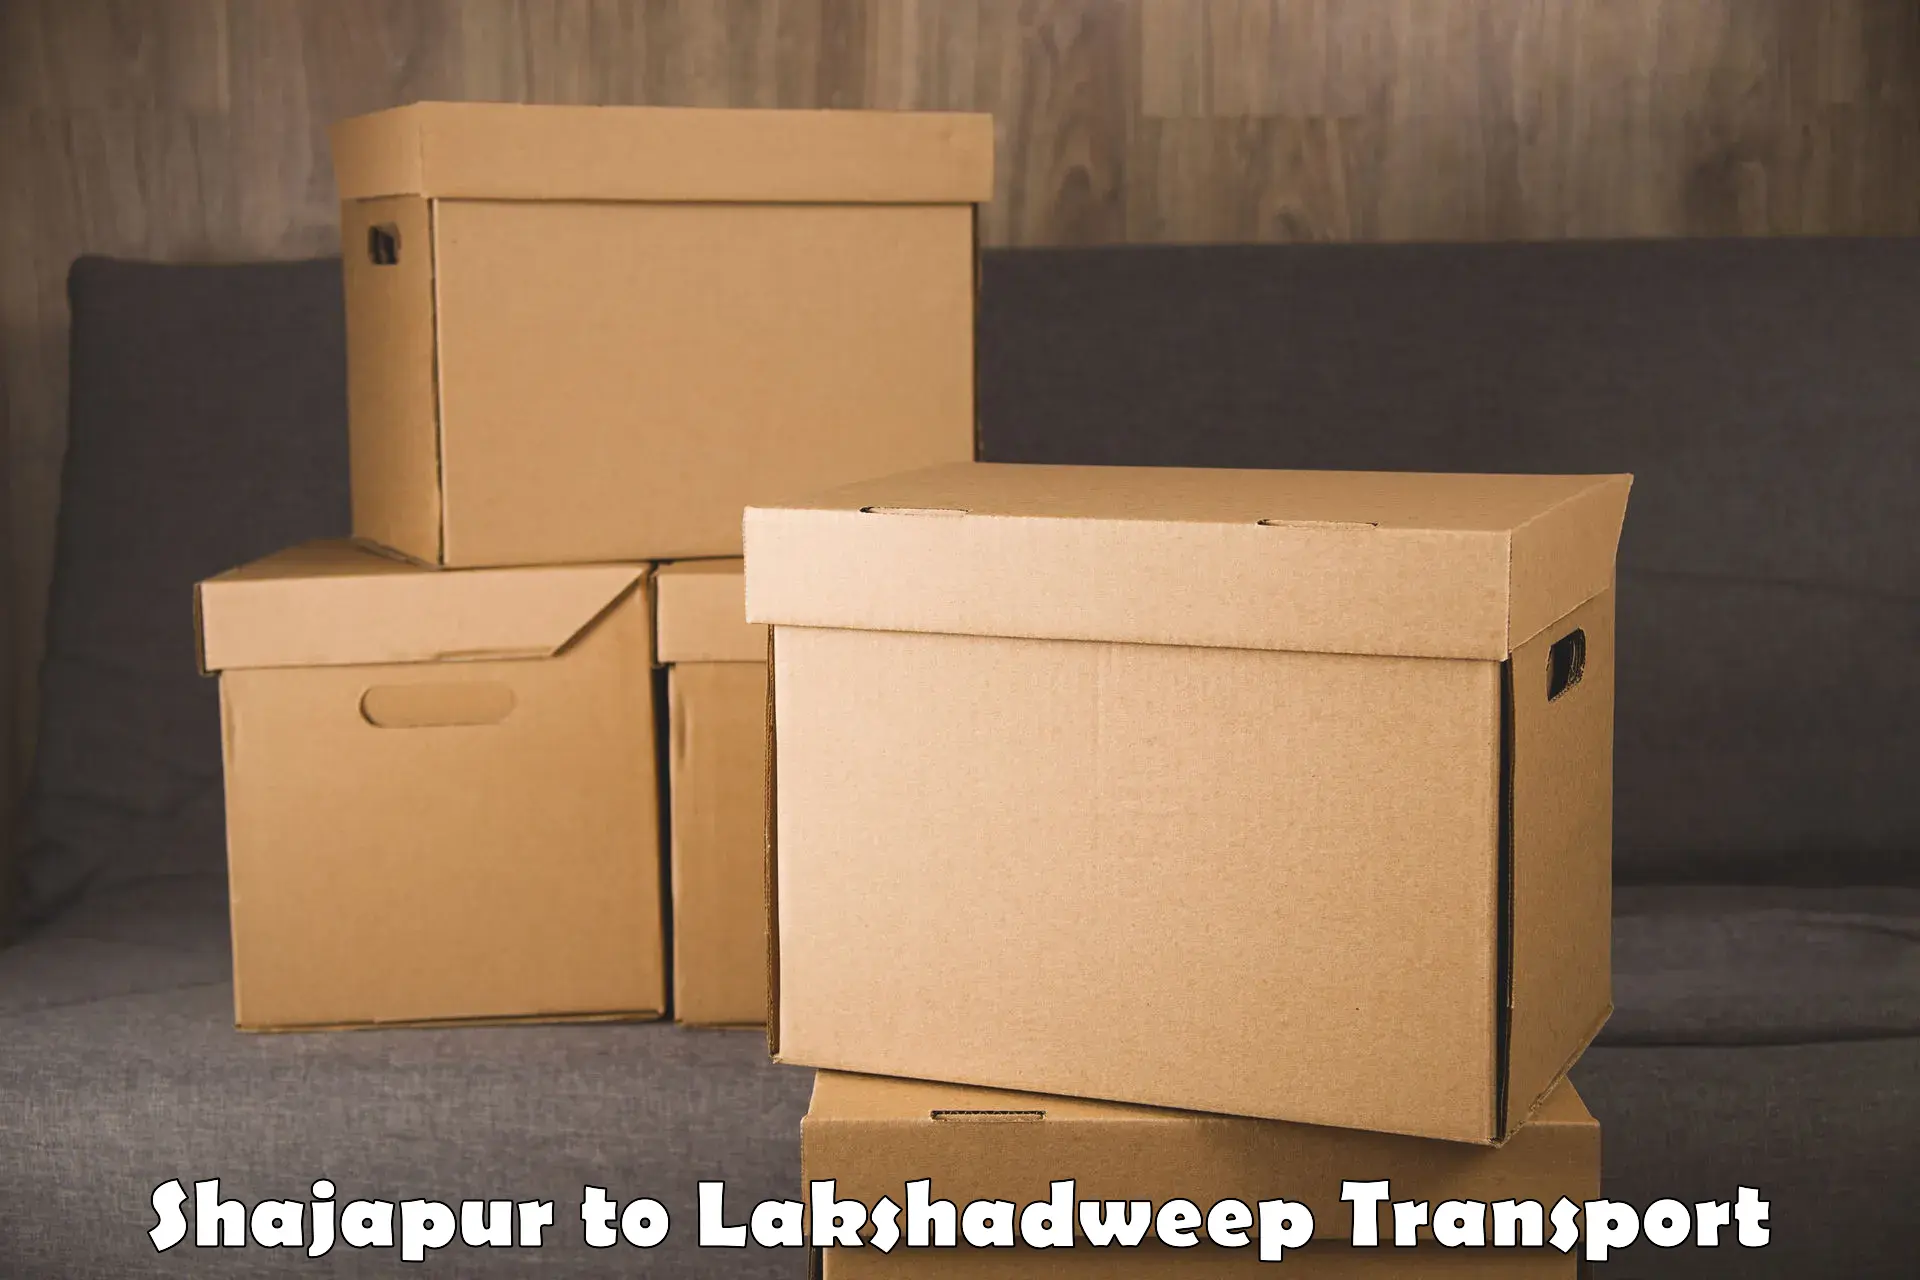 Bike transfer Shajapur to Lakshadweep